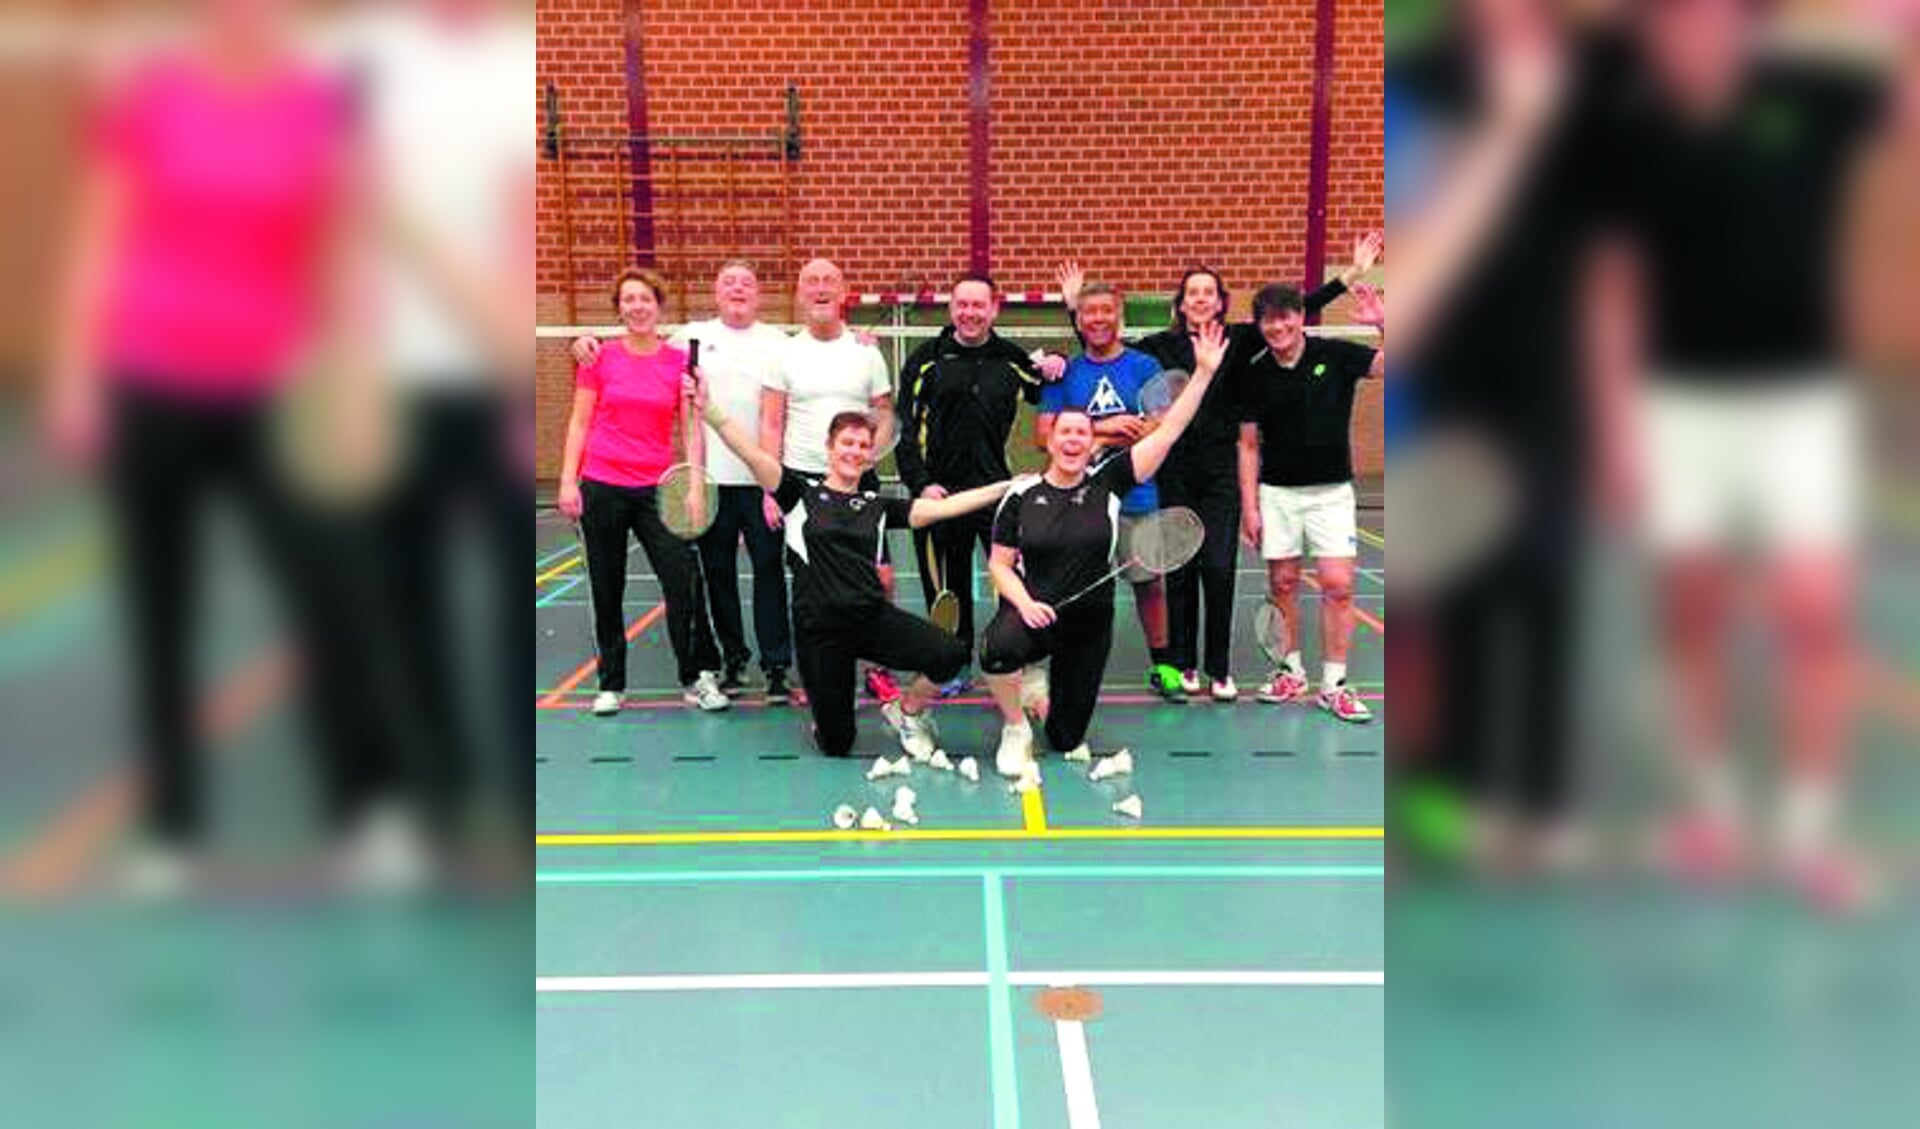 Houd je van badmintonnen, dan kun je je aansluiten bij Joke's Badminton in Heemskerk.